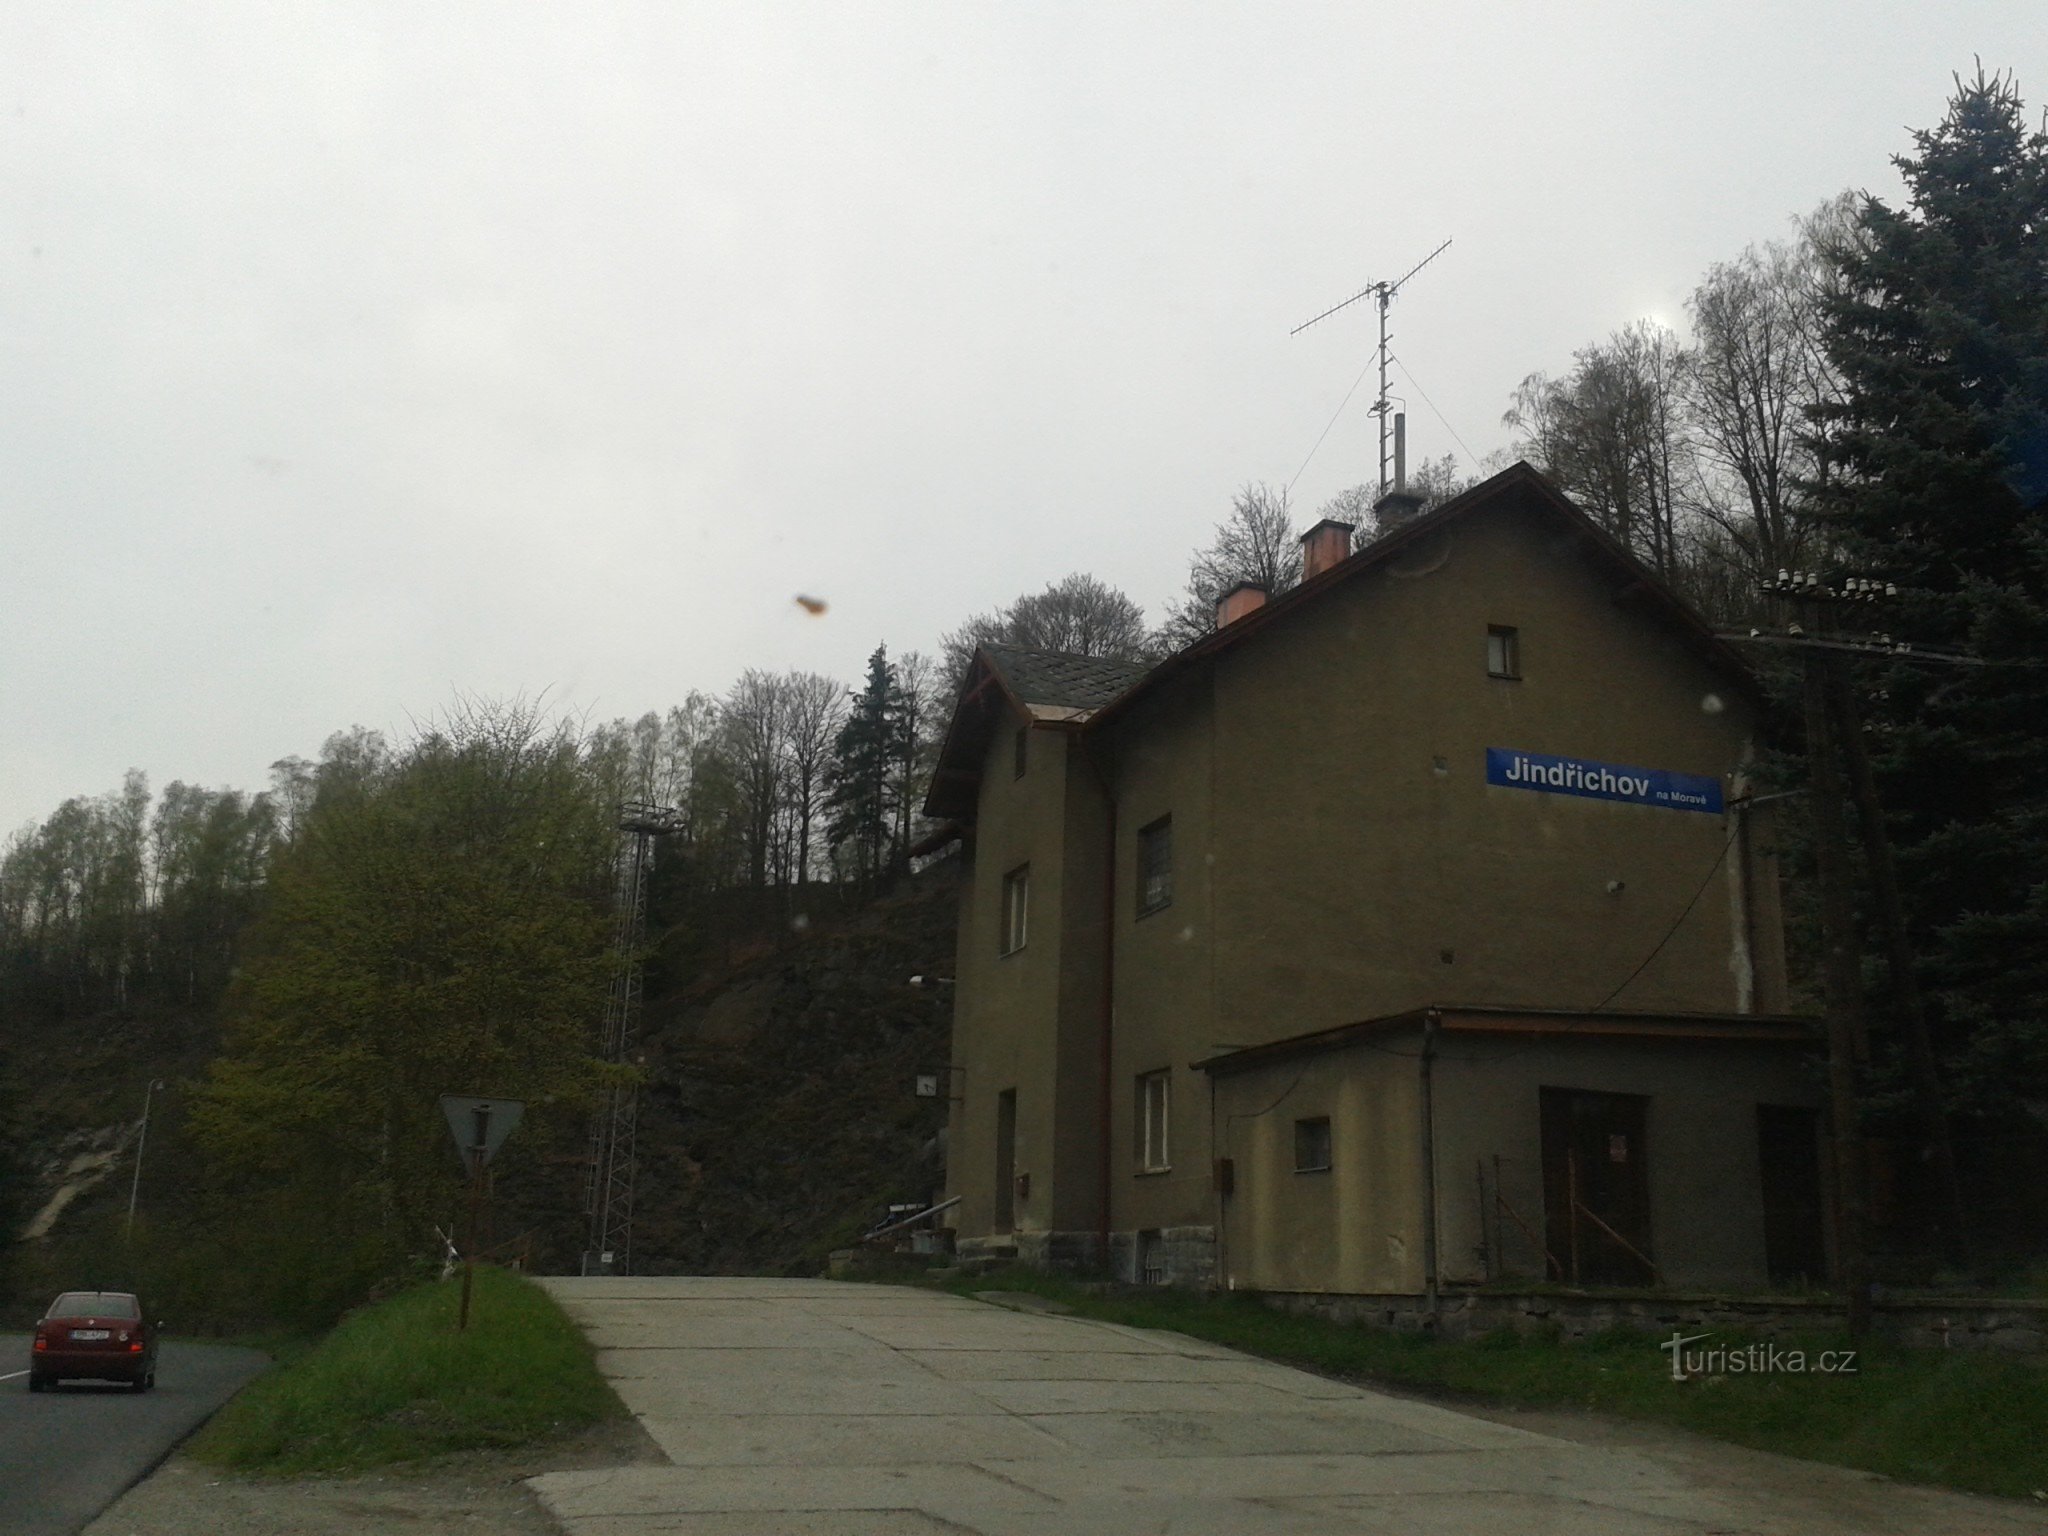 Jindřichov Määrissä - entinen paperitehdas ja rautatieasema, jossa aika pysähtyi, Šumperkin alue